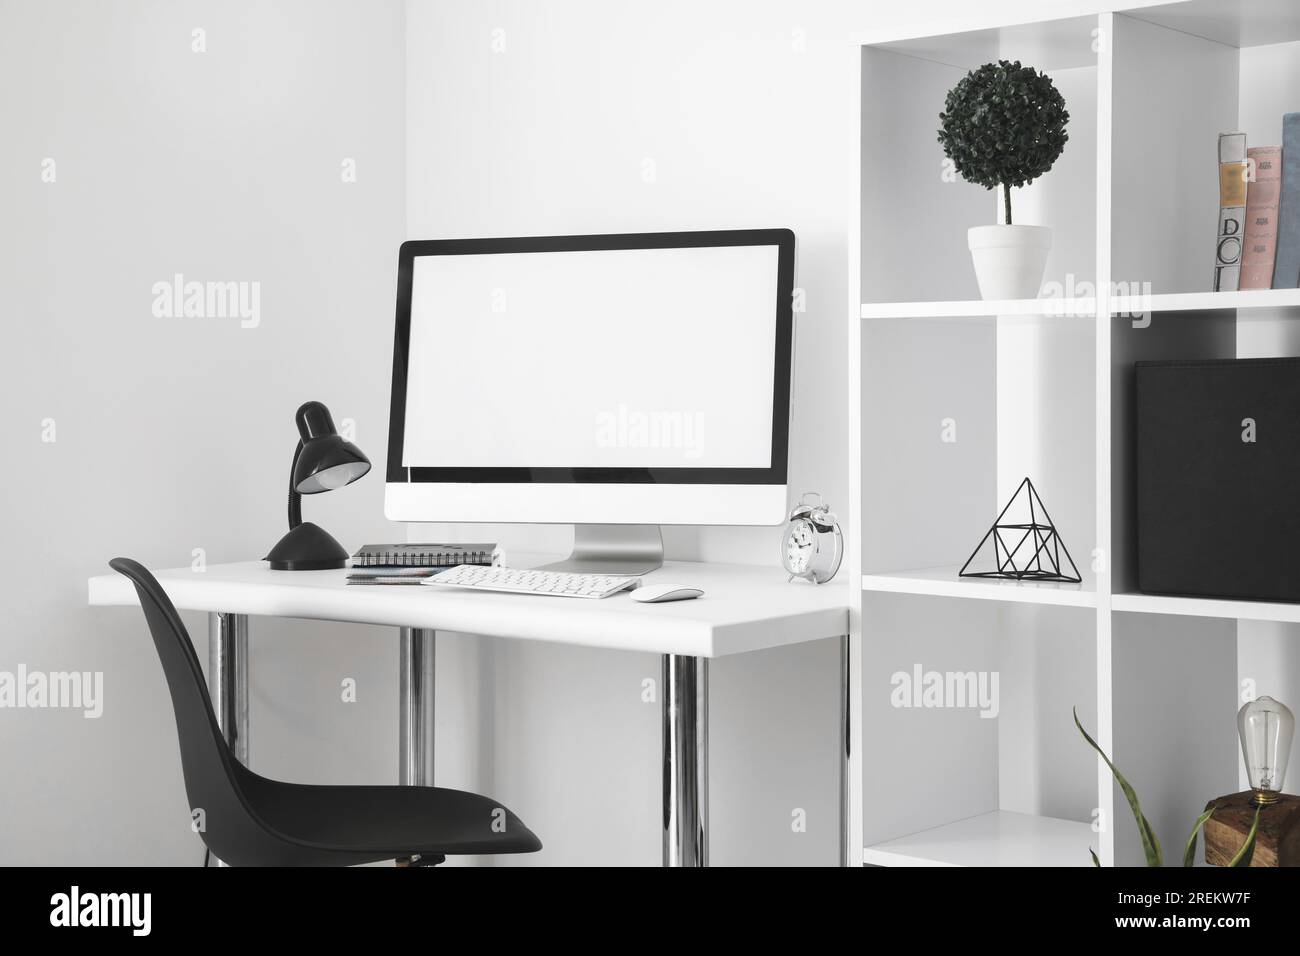 Bureau avec chaise à écran d'ordinateur. Résolution et haute qualité belle photo Banque D'Images